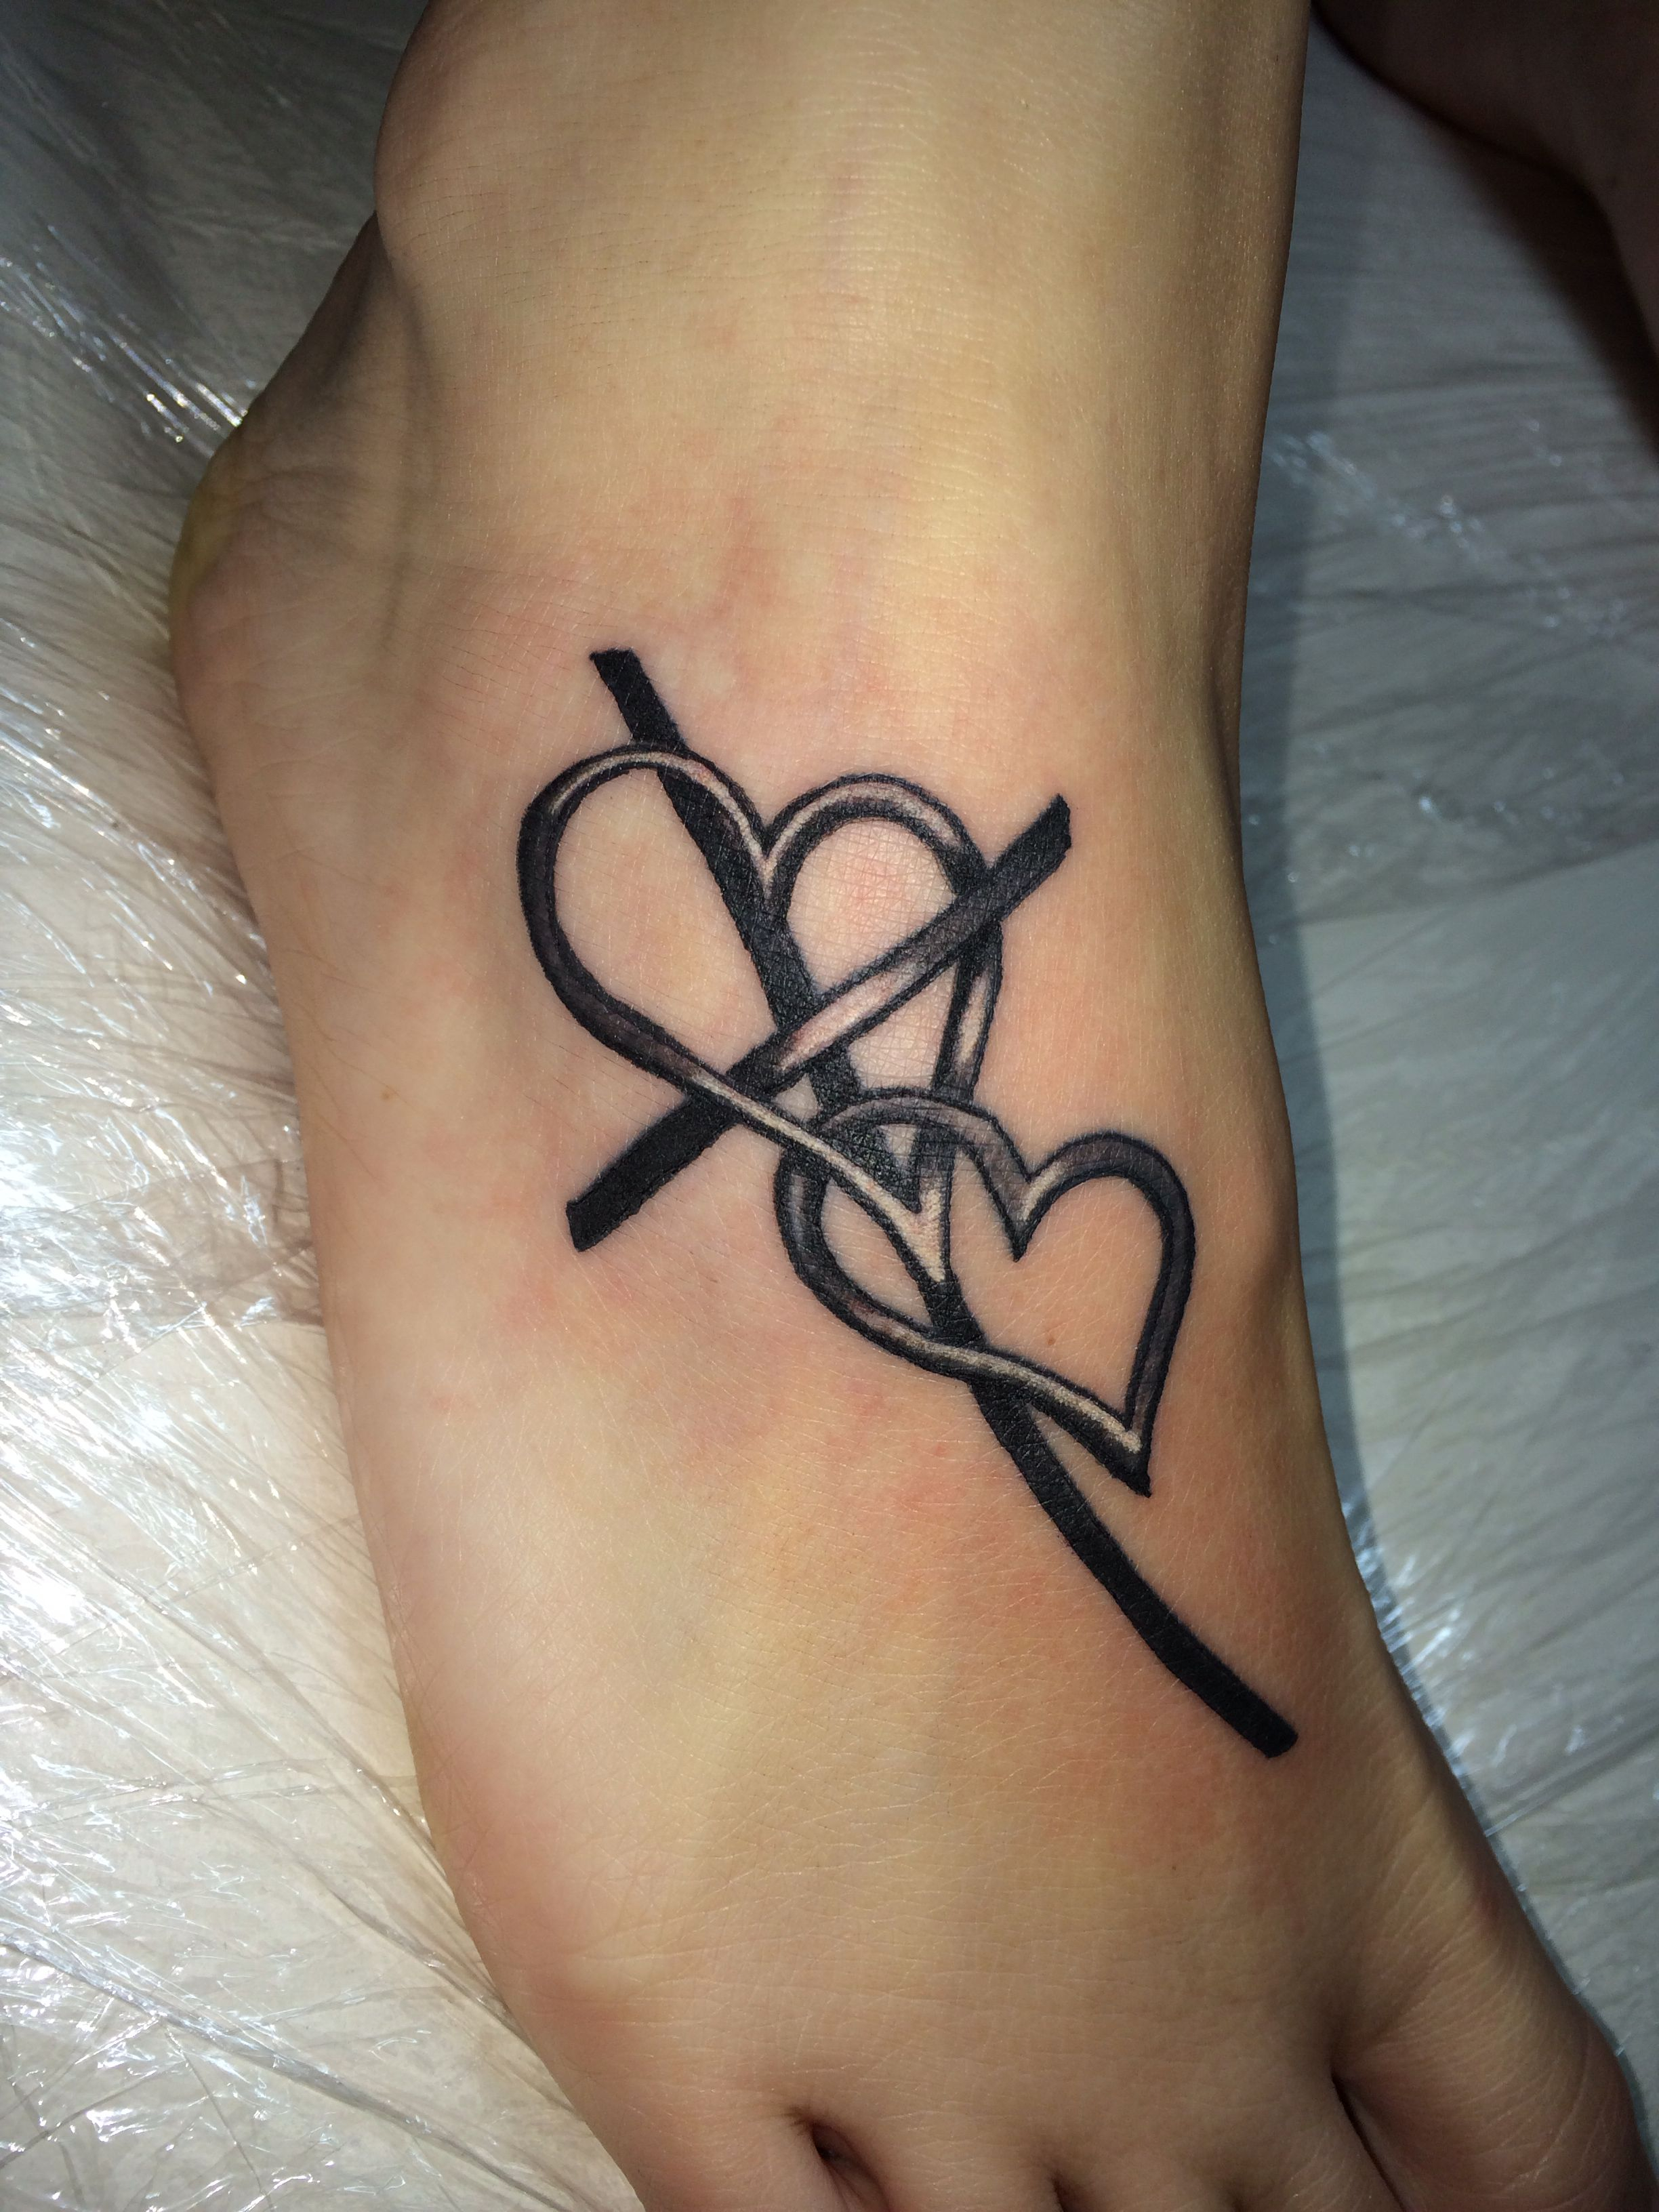 Cross Tattoo Cross With Heart Tattoo Foot Tattoo Tattoos throughout sizing 2448 X 3264